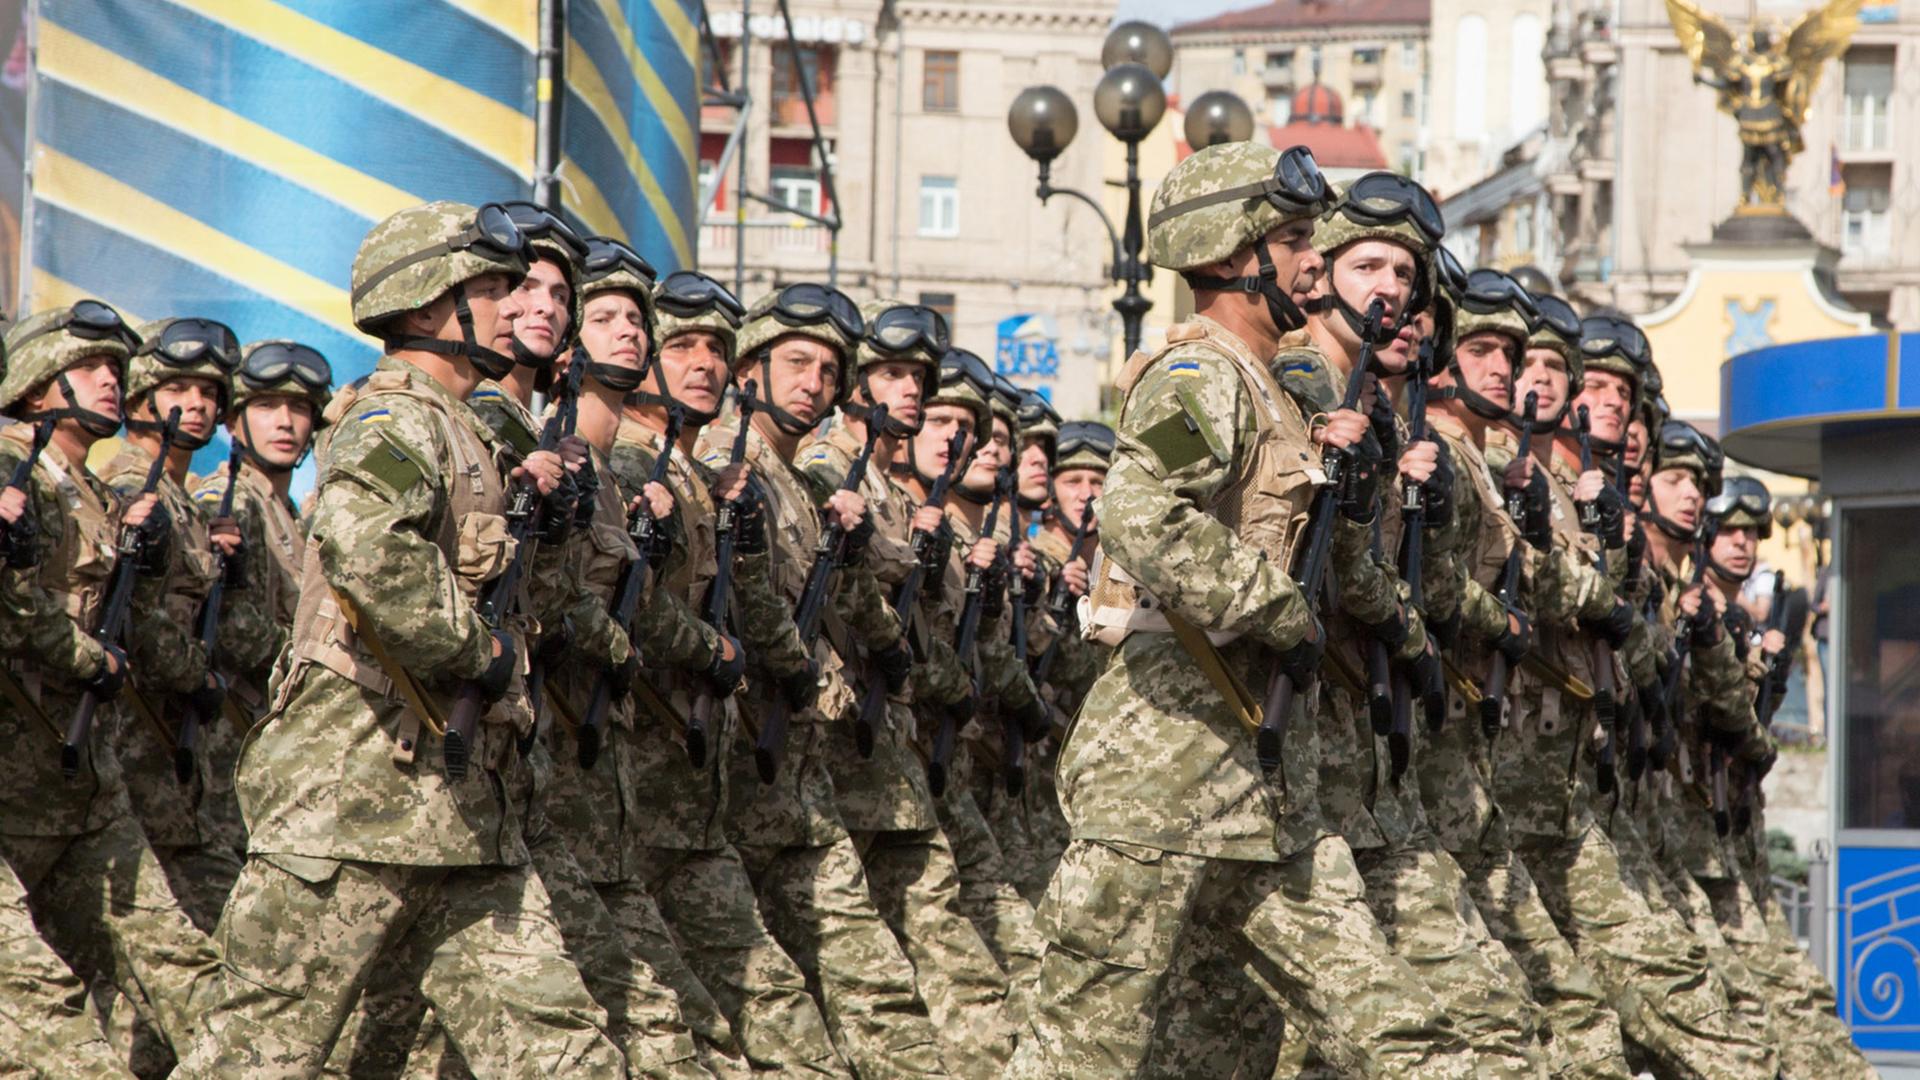 Bei den offiziellen Feierlichkeiten zum Unabhängigkeitstag marschieren Soldaten, die aktiv an den Kämpfen in der Ost-Ukraine teilnehmen, während der Parade am 24.08.2014 auf dem Maidan-Platz in Kiew (Ukraine) auf.